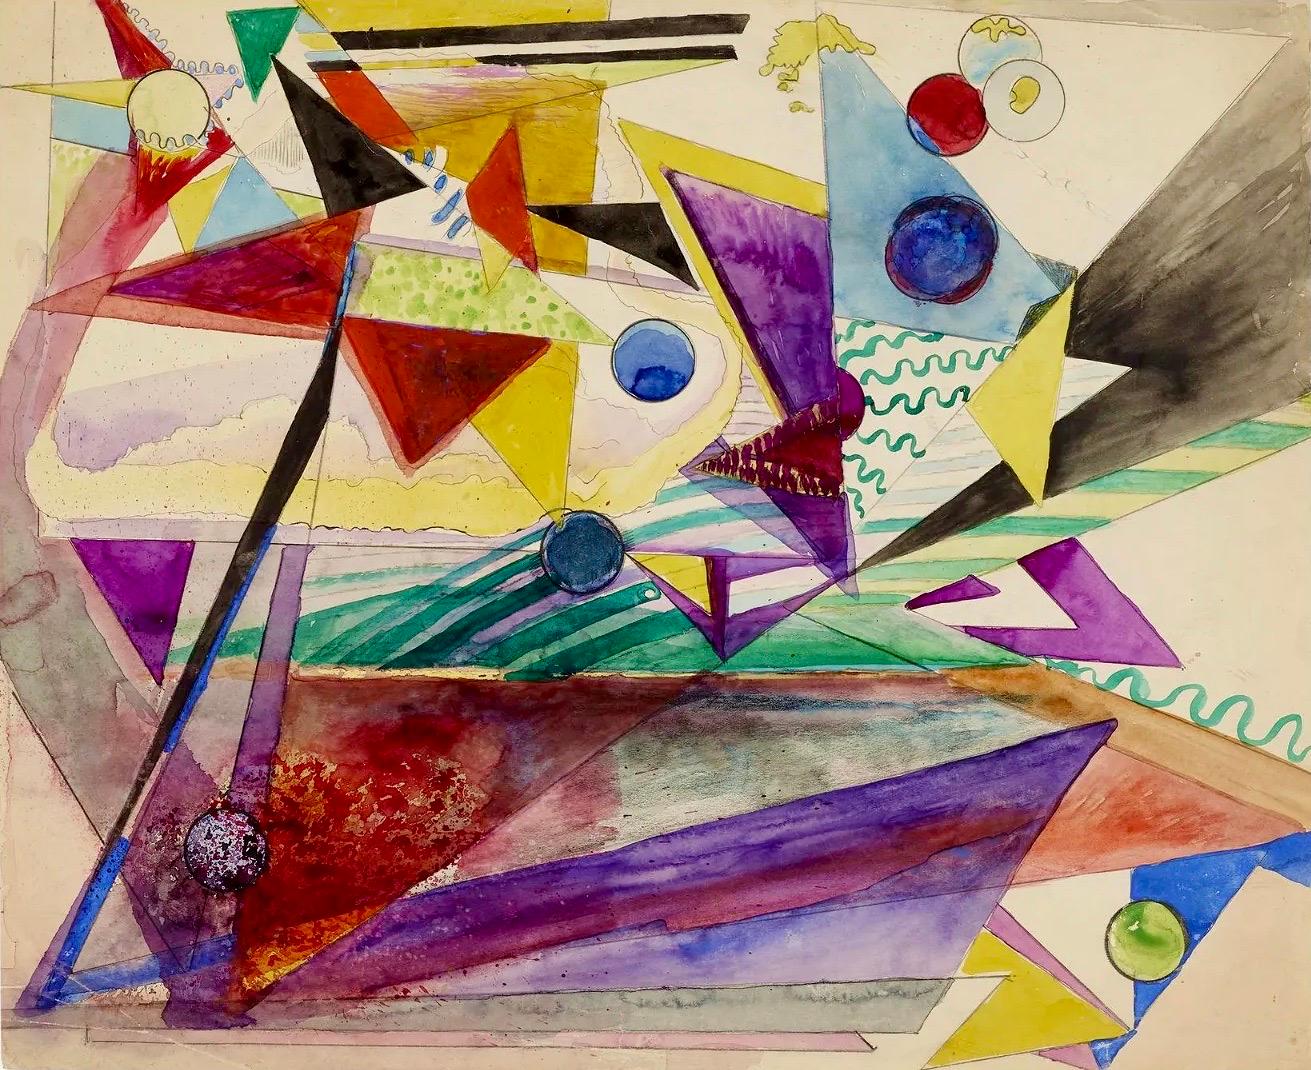 Abstract Drawing Hilla Rebay von Ehrenwiesen - Œuvre abstraite et non objectif sur papier - Dessin d'une artiste de Guggenheim représentant une femme, années 1940